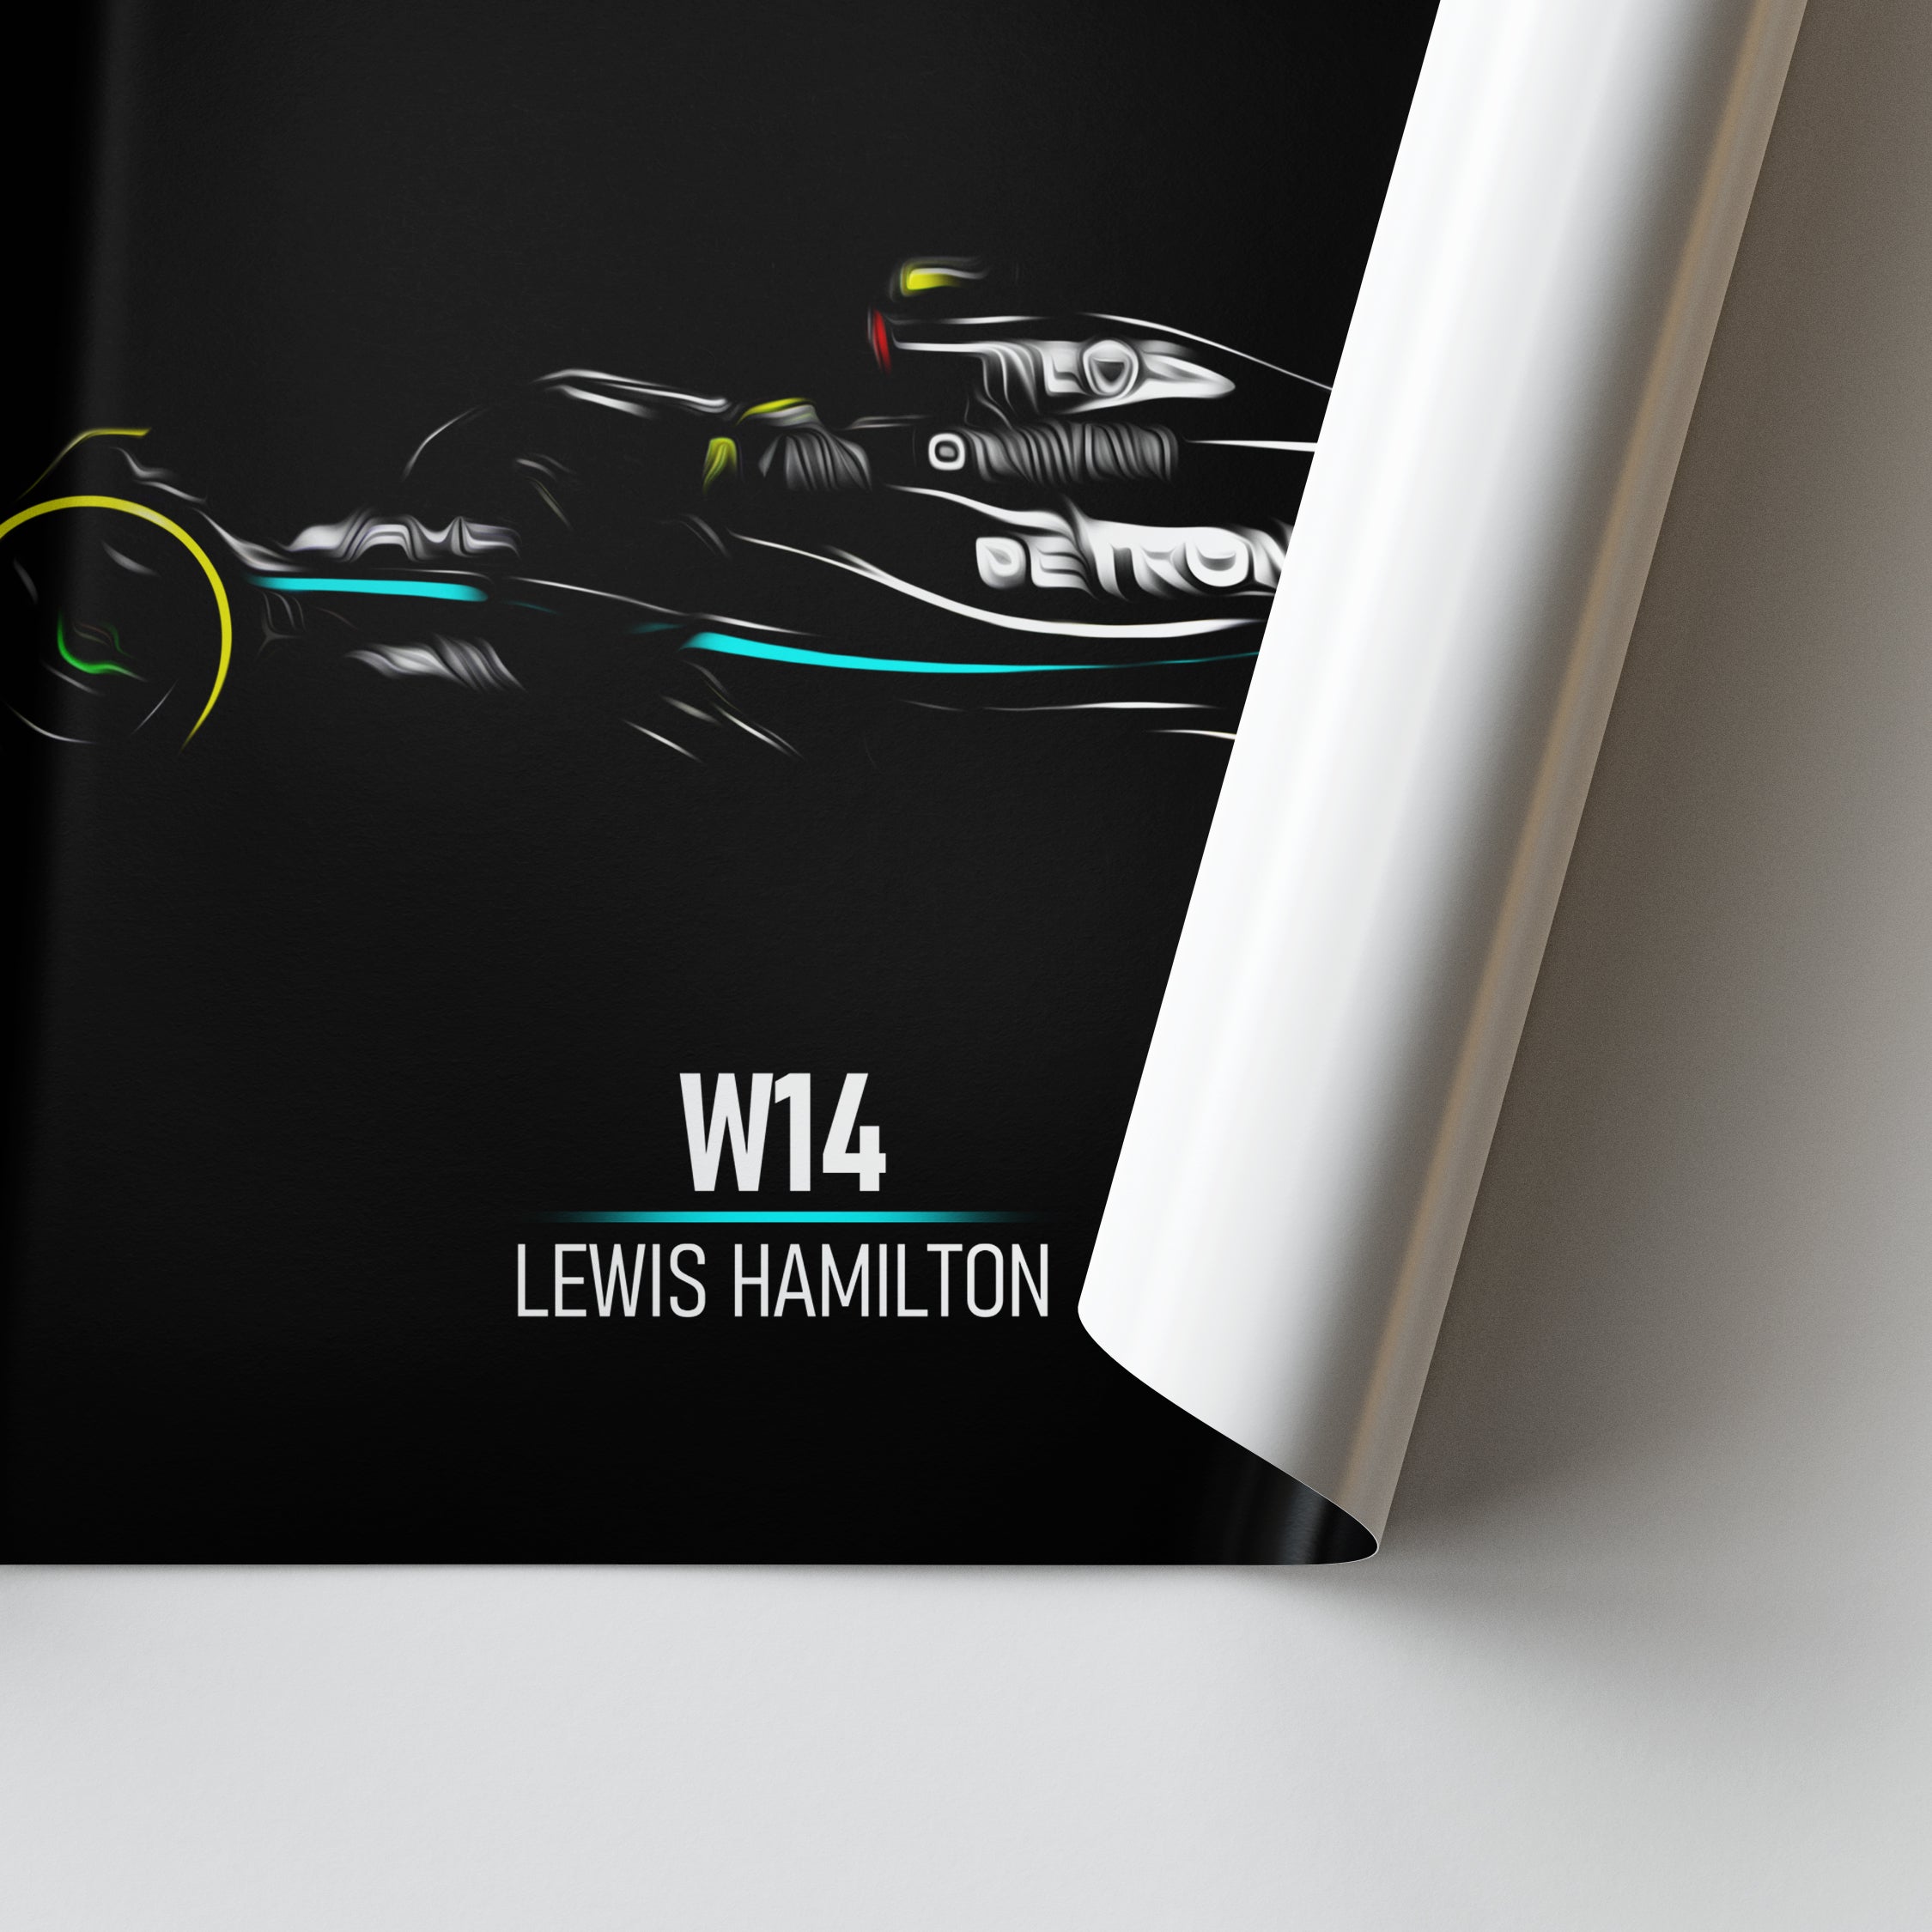 Mercedes W14, Lewis Hamilton - Formula 1 Poster Print Close up